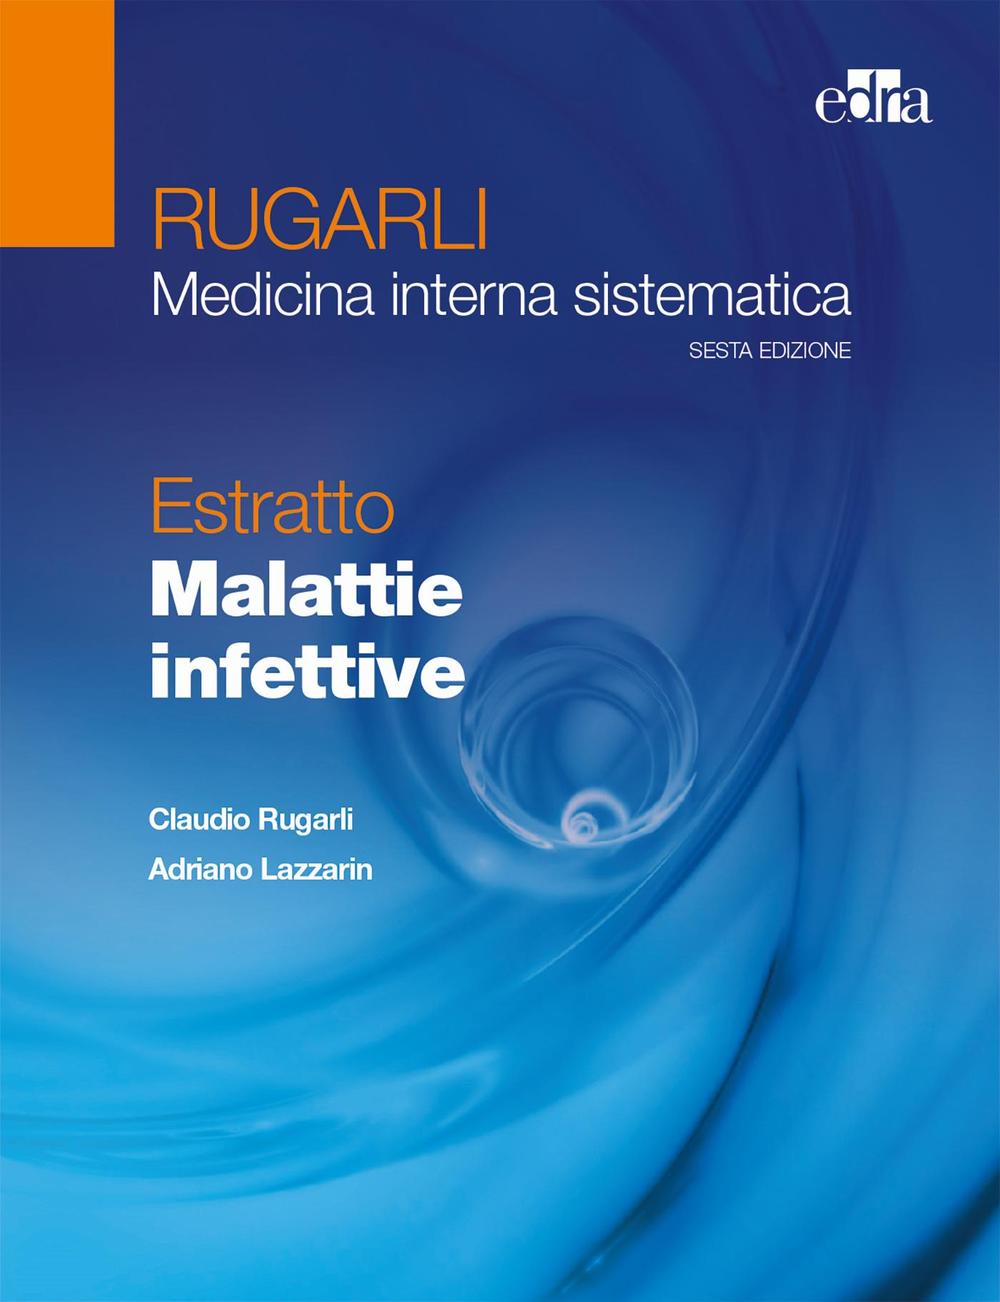 Kniha Rugarli. Medicina interna sistematica. Estratto: Malattie infettive Claudio Rugarli